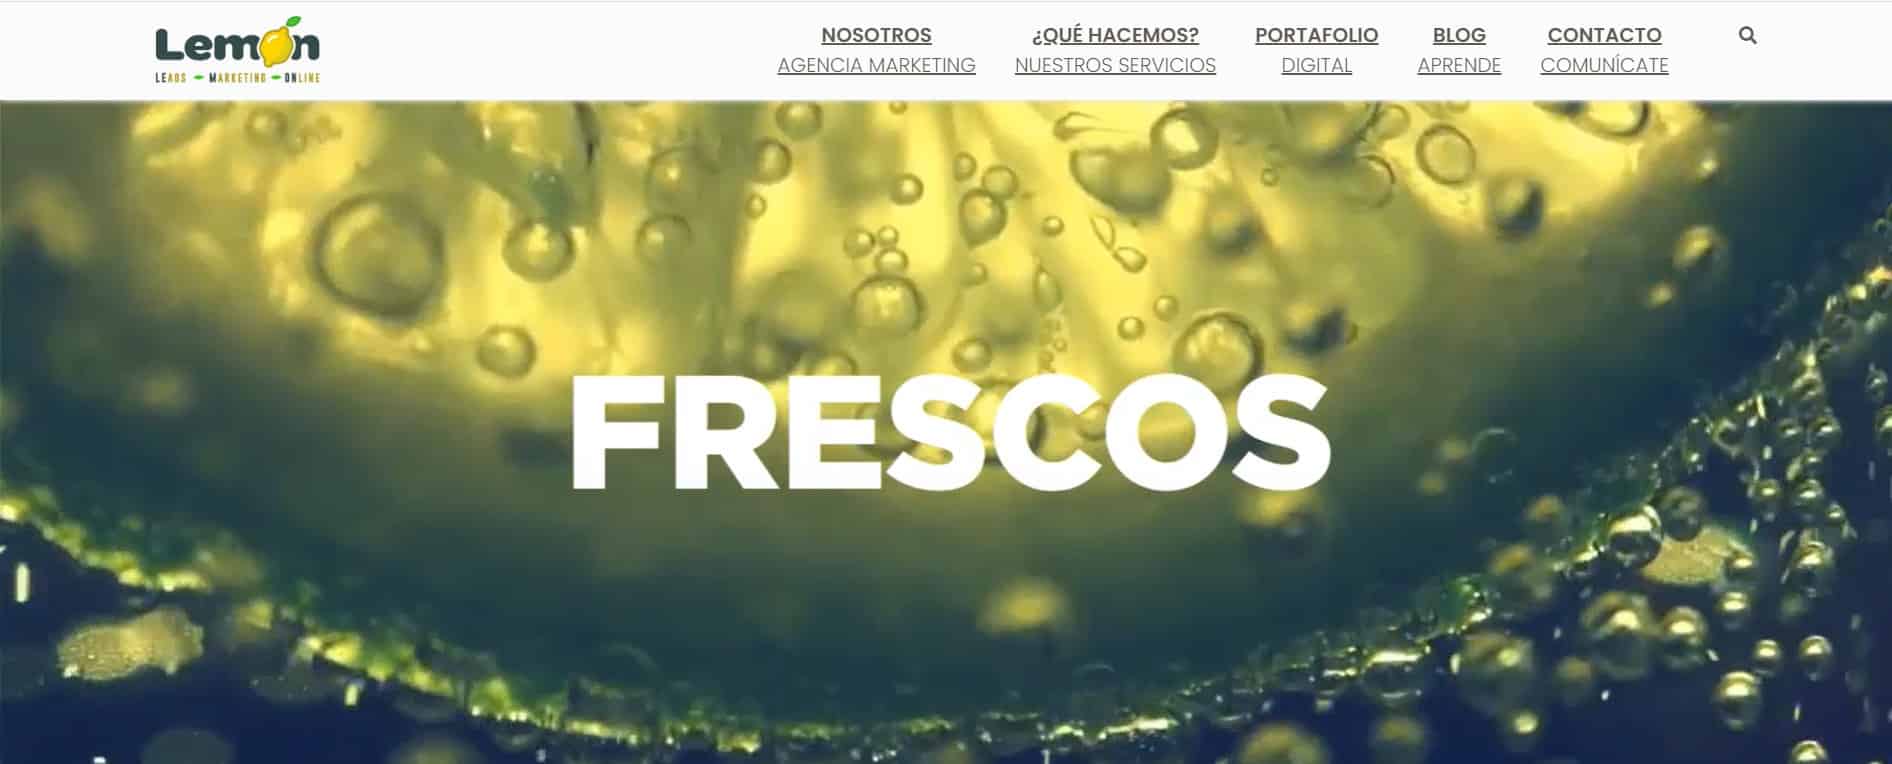 agencia de marketing en colombia Lemon